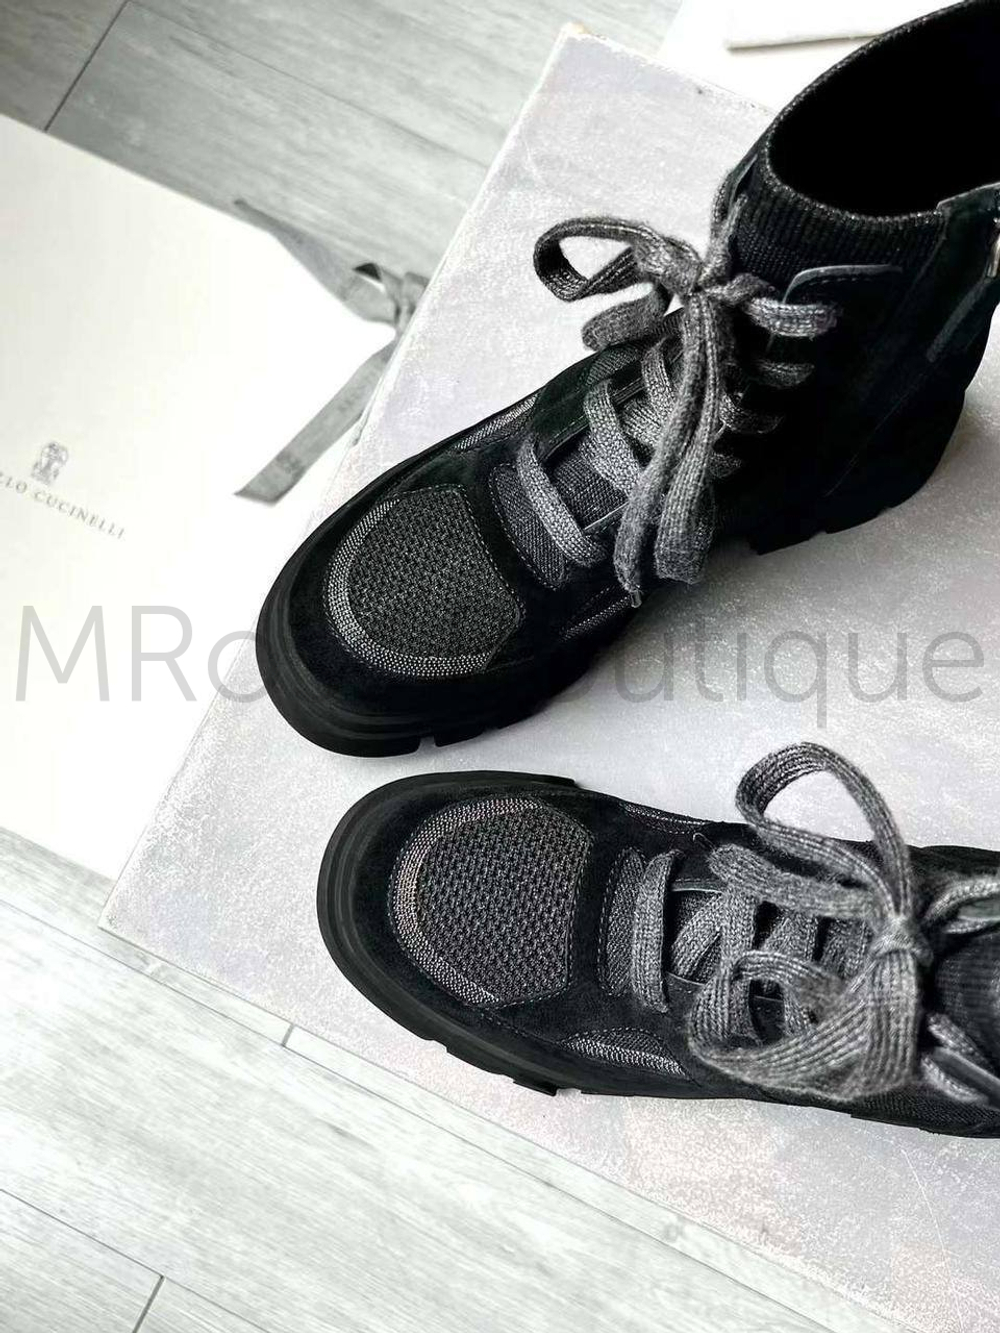 Черные комбинированные ботинки Brunello Cucinelli на толстой подошве